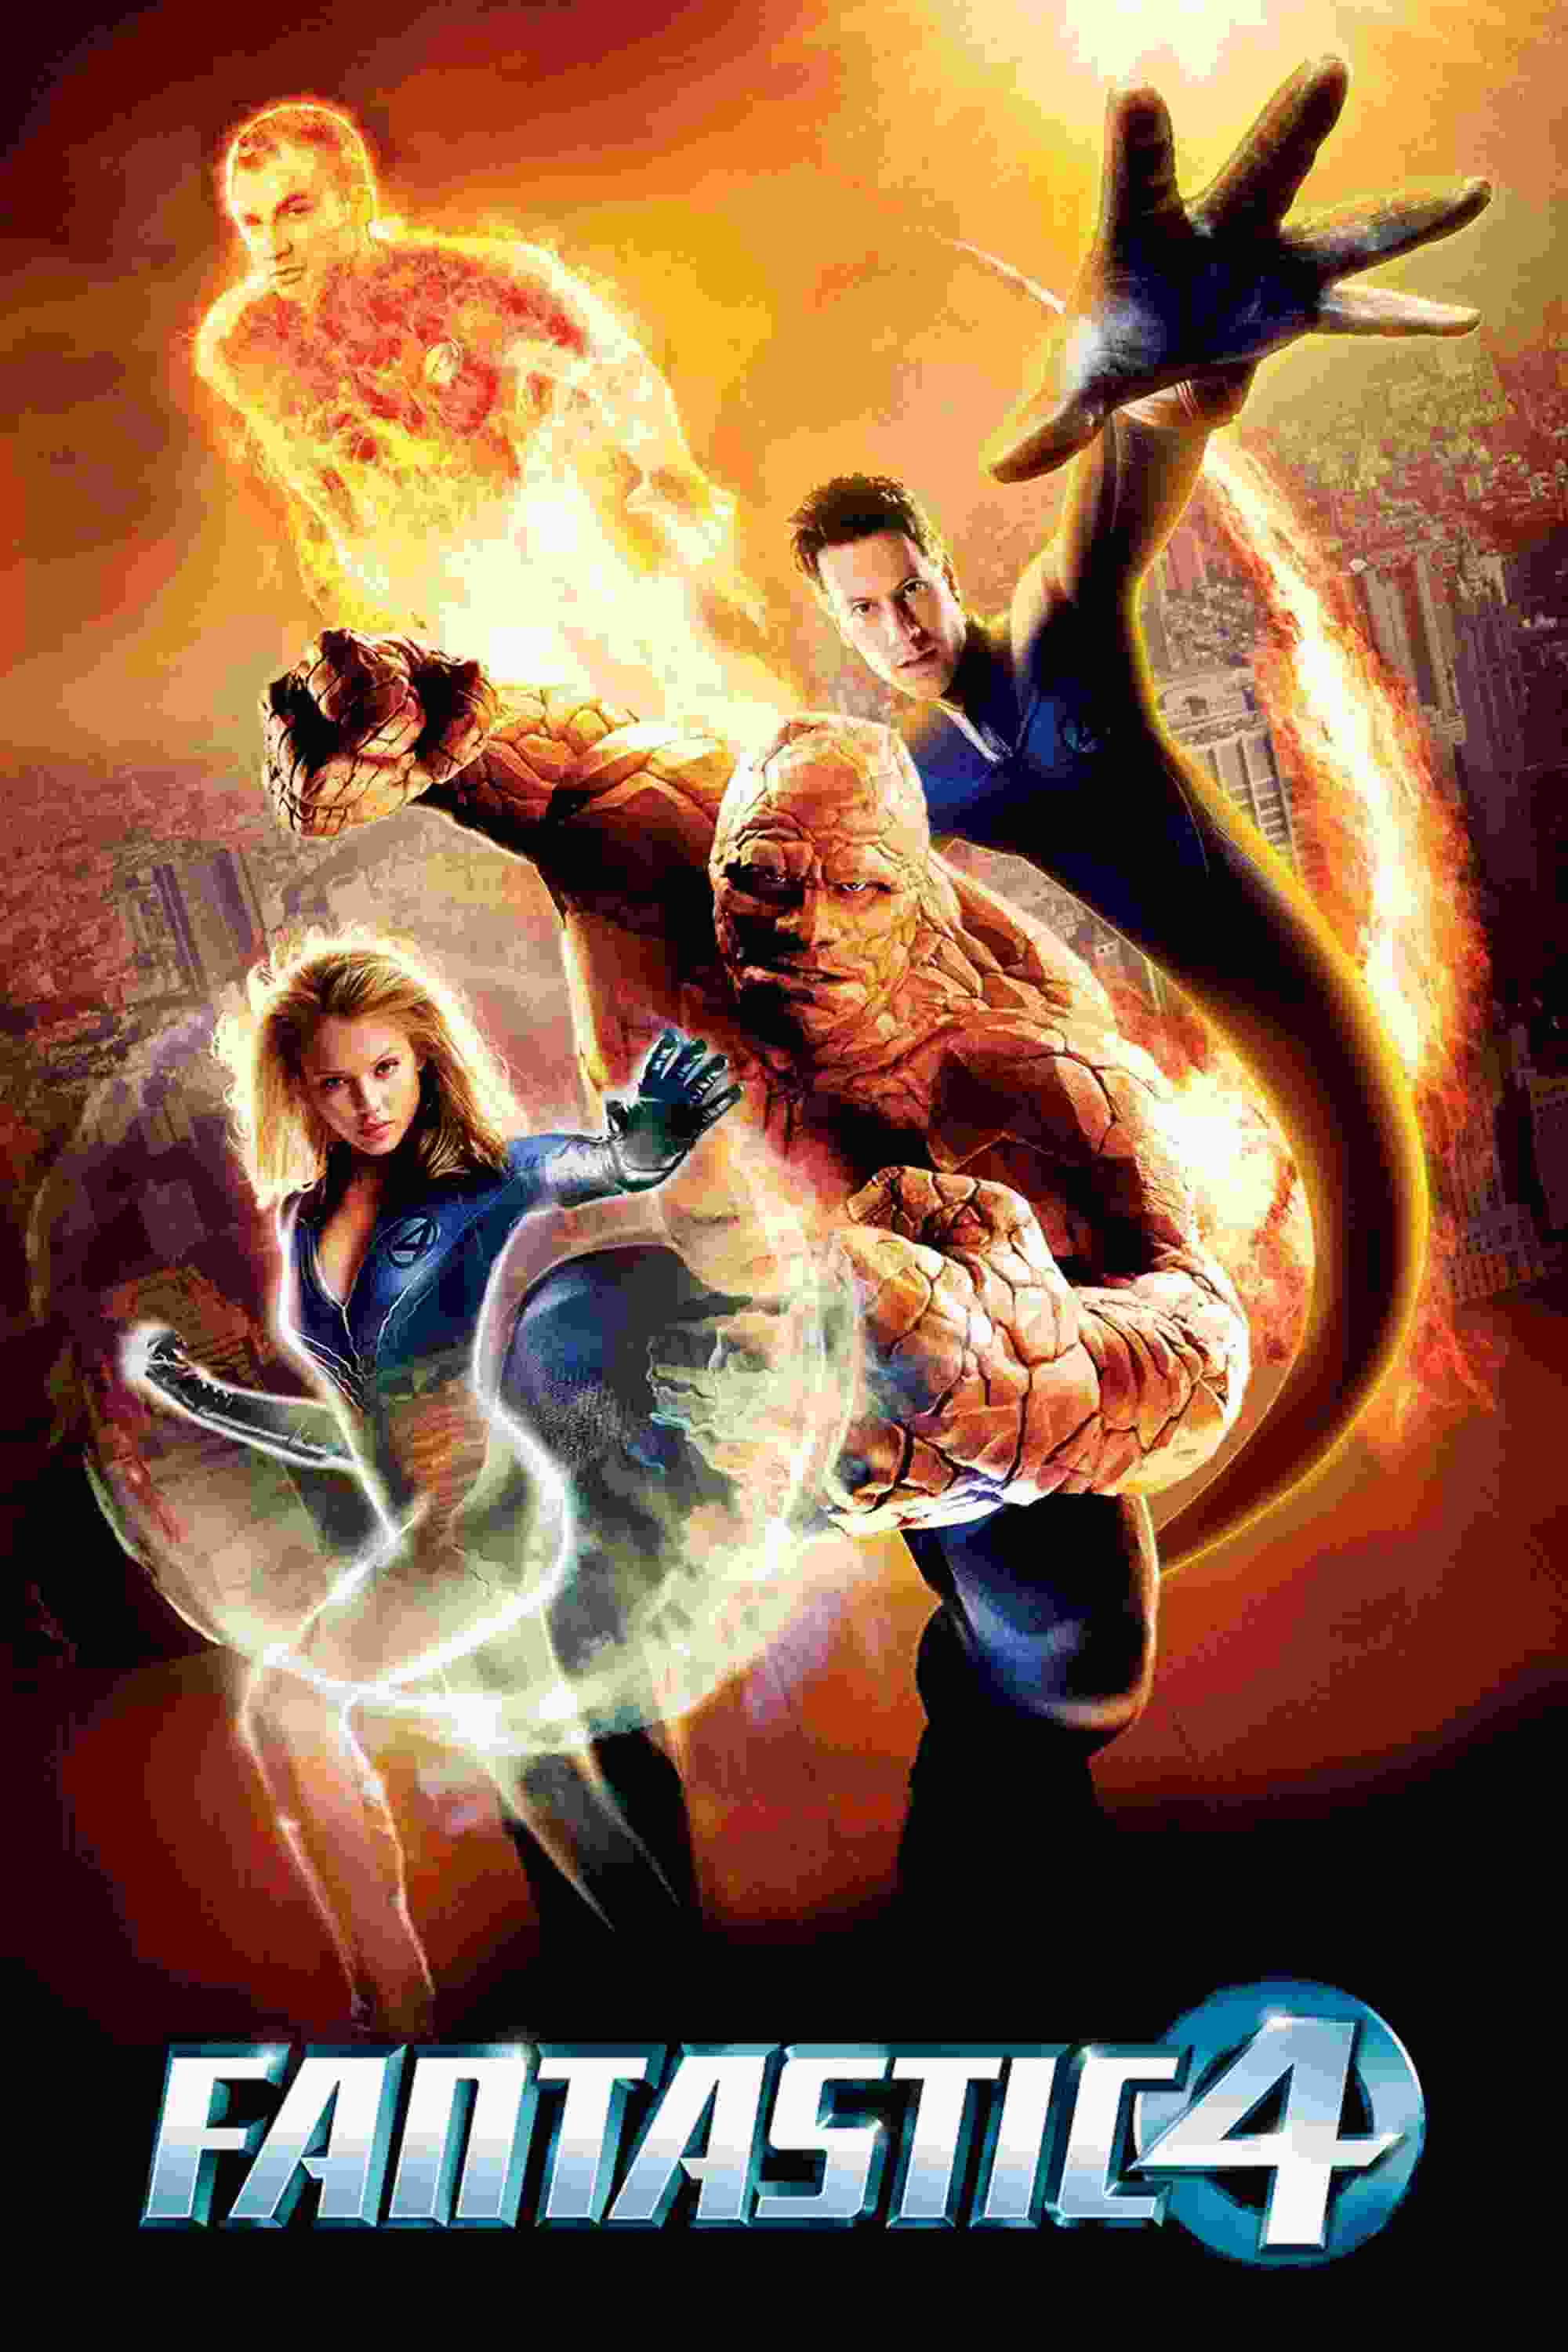 Fantastic Four (2005) Ioan Gruffudd